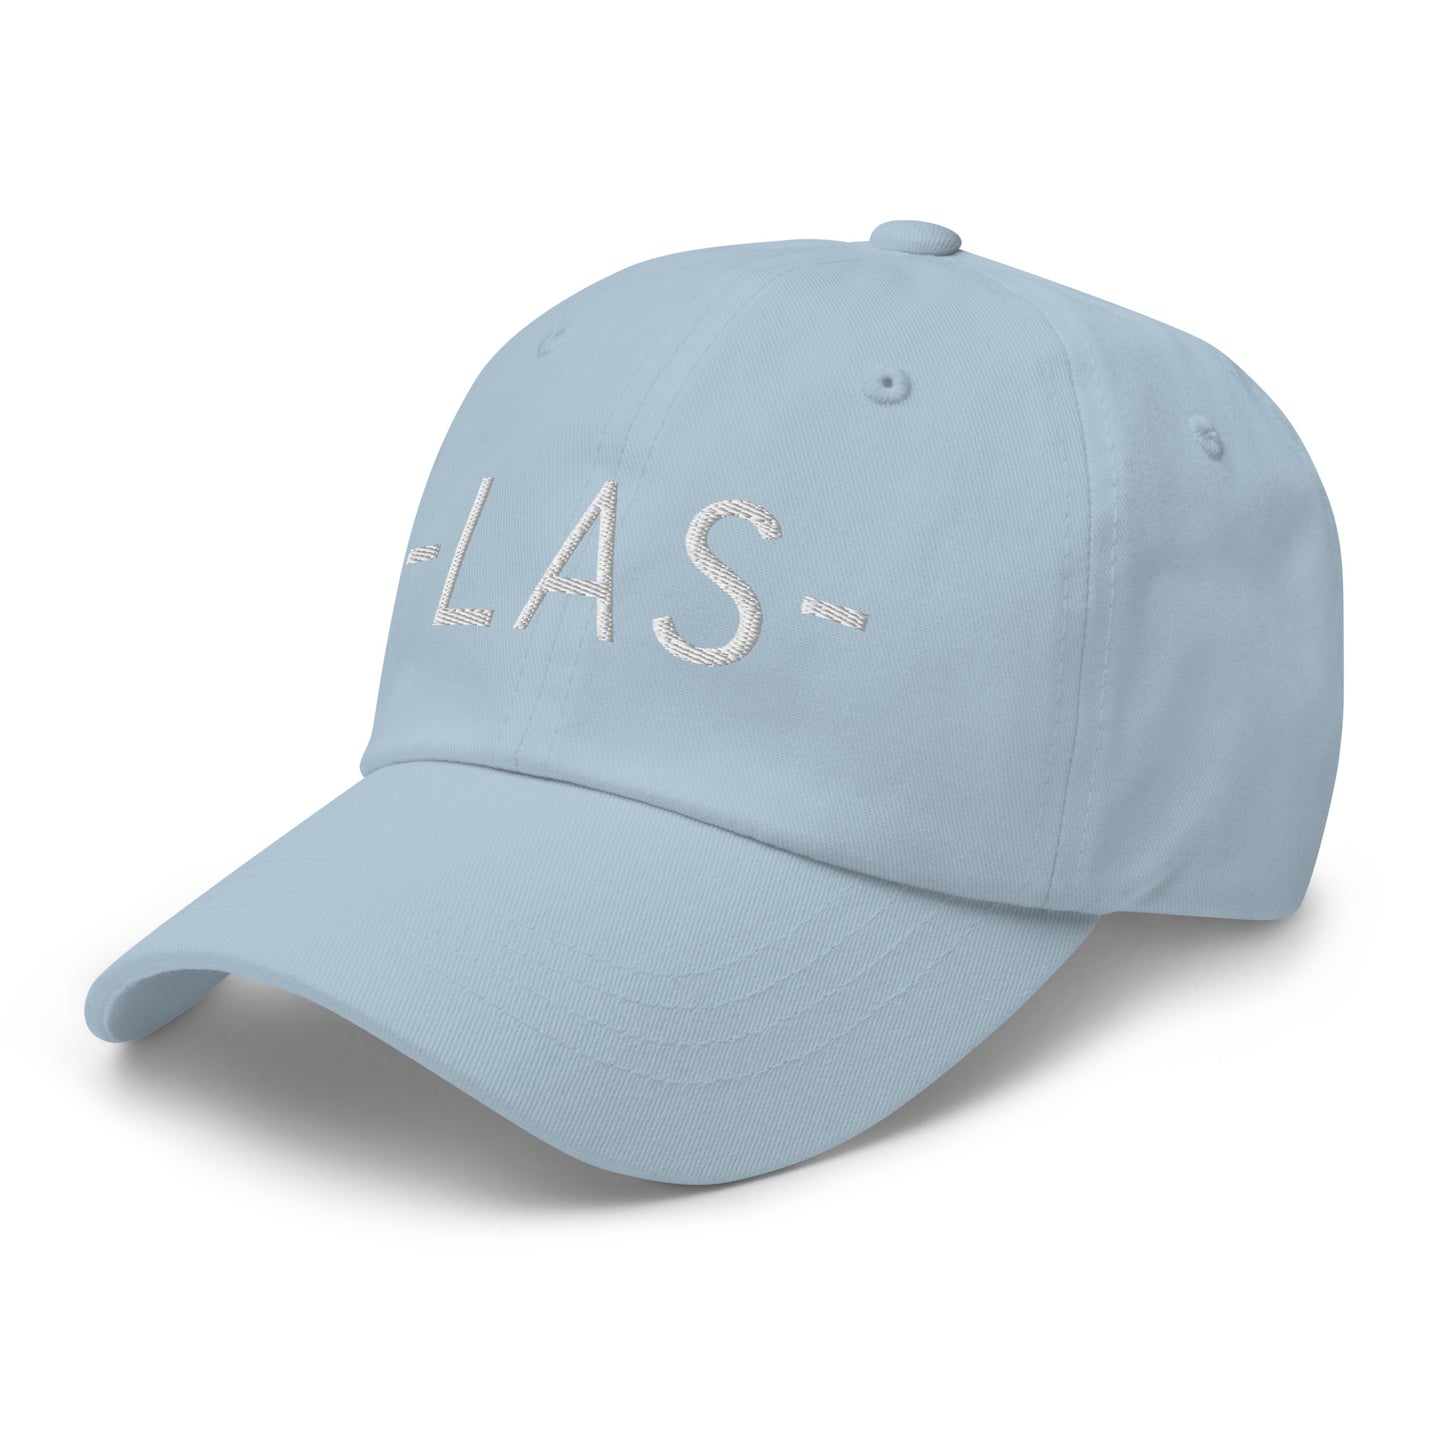 Souvenir Baseball Cap - White • LAS Las Vegas • YHM Designs - Image 28